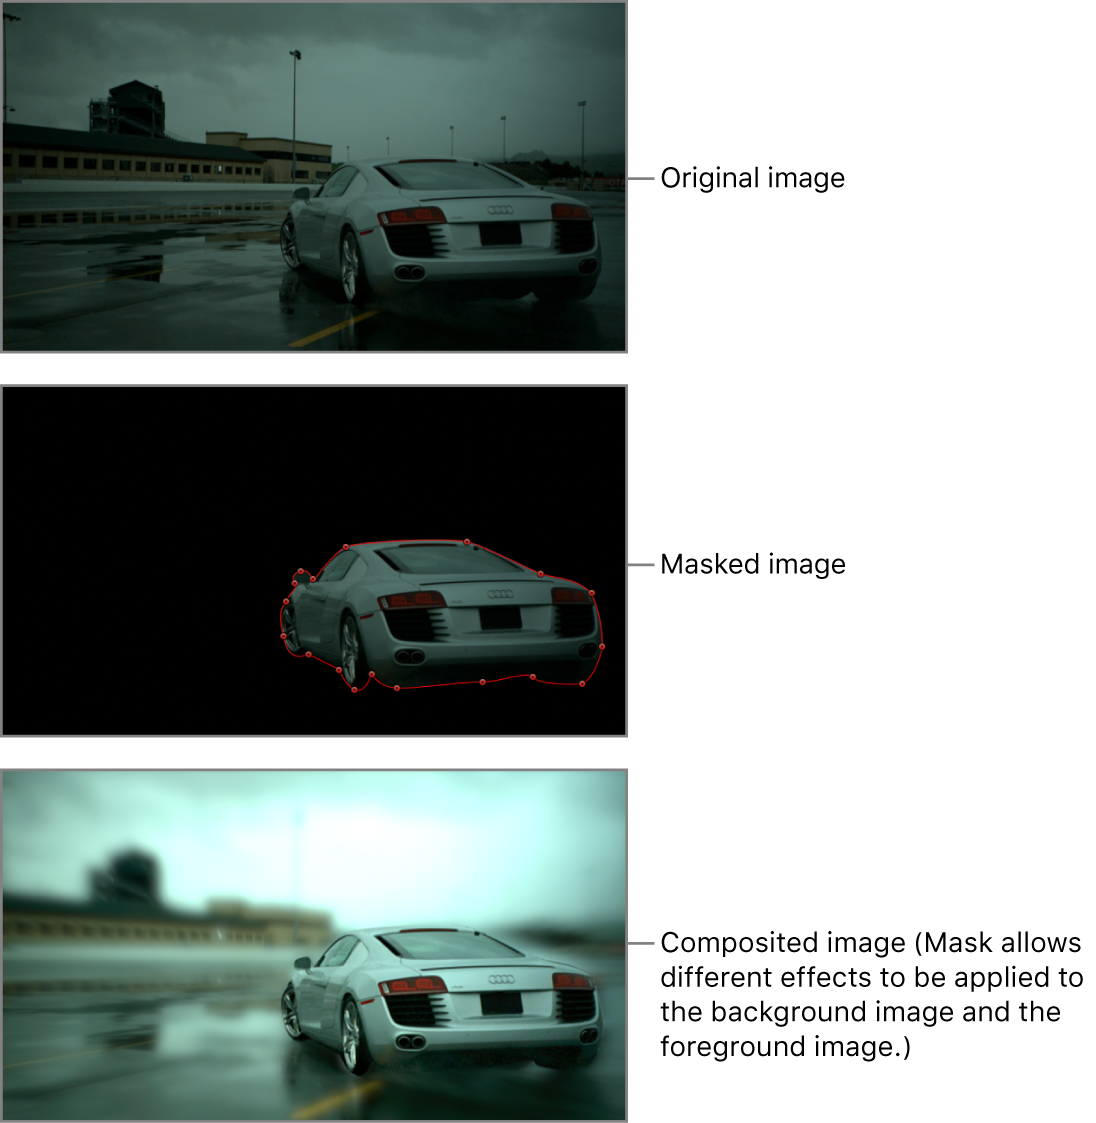 显示遮罩前的汽车图像、沿汽车周围绘制的遮罩以及最终的转描效果的画布（模糊滤镜影响背景但不影响汽车）